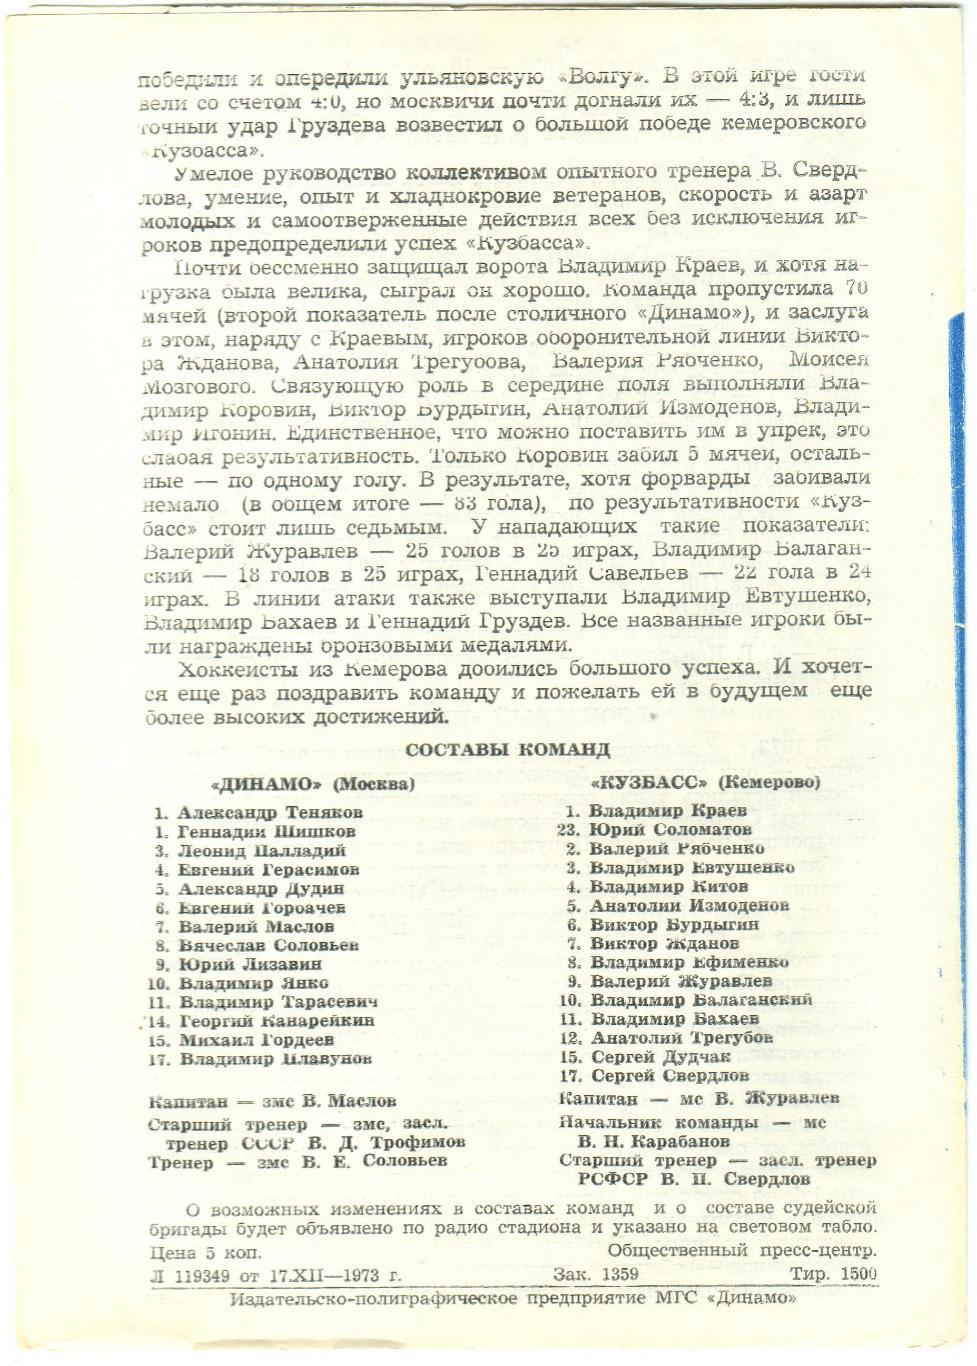 Динамо Москва – Кузбасс Кемерово 19.12.1973 1